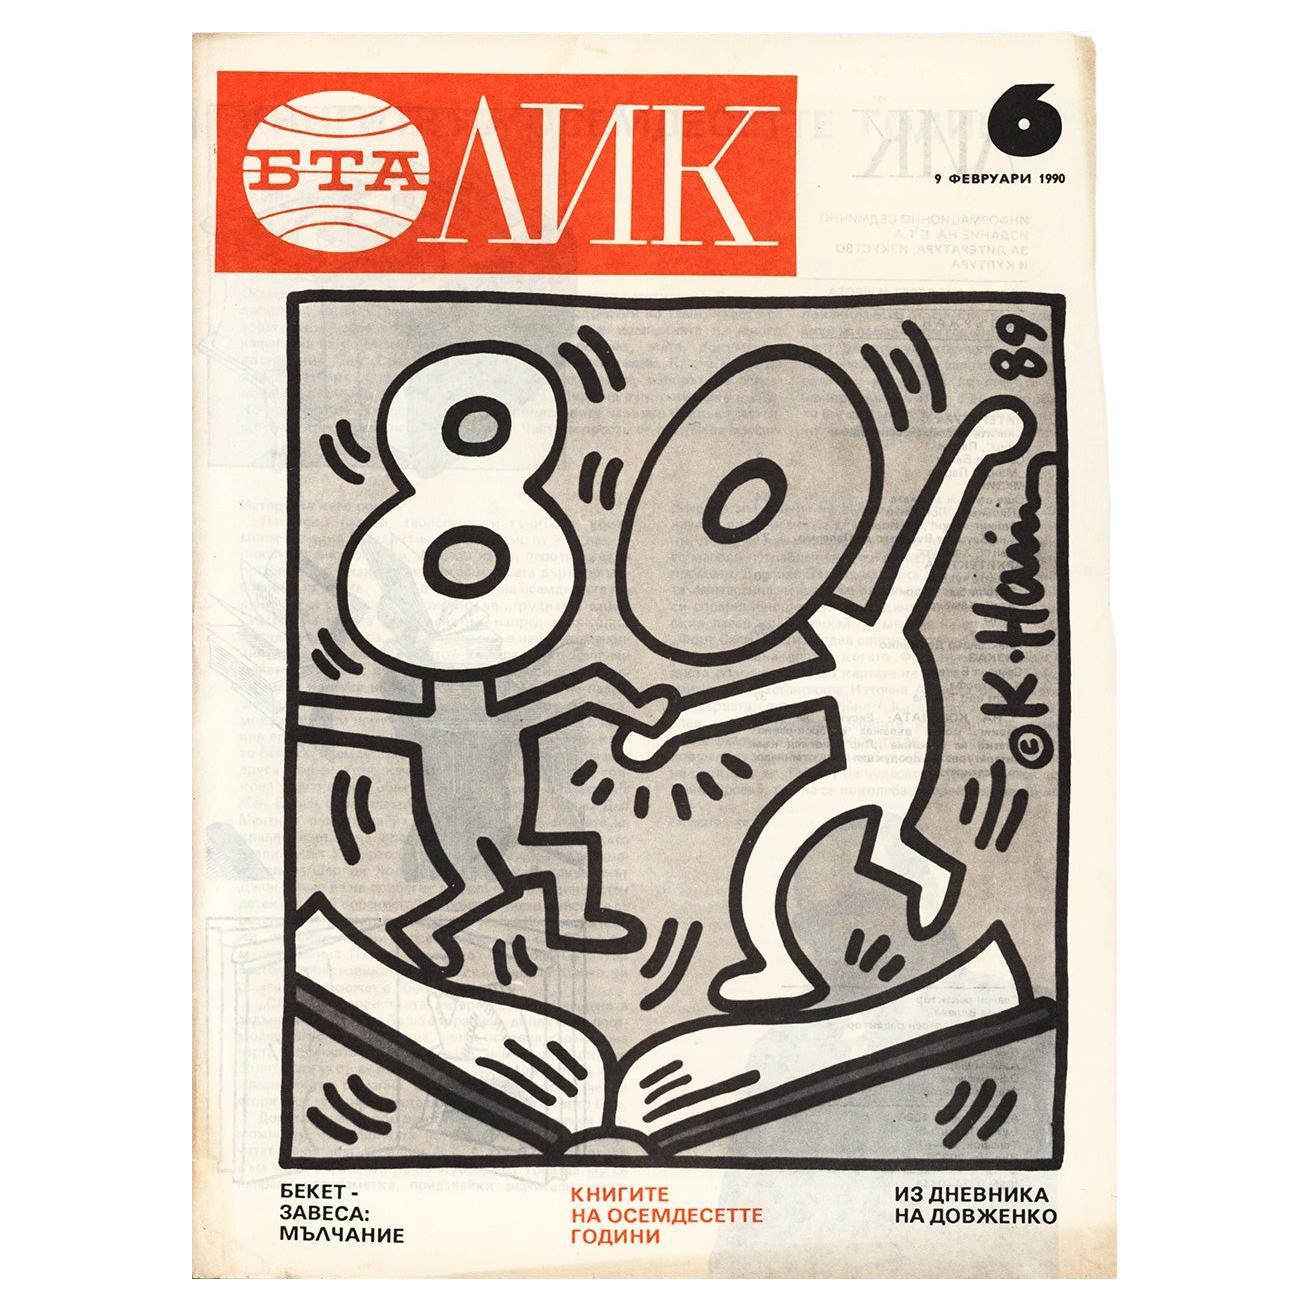 Illustrationskunst von Keith Haring, 1990